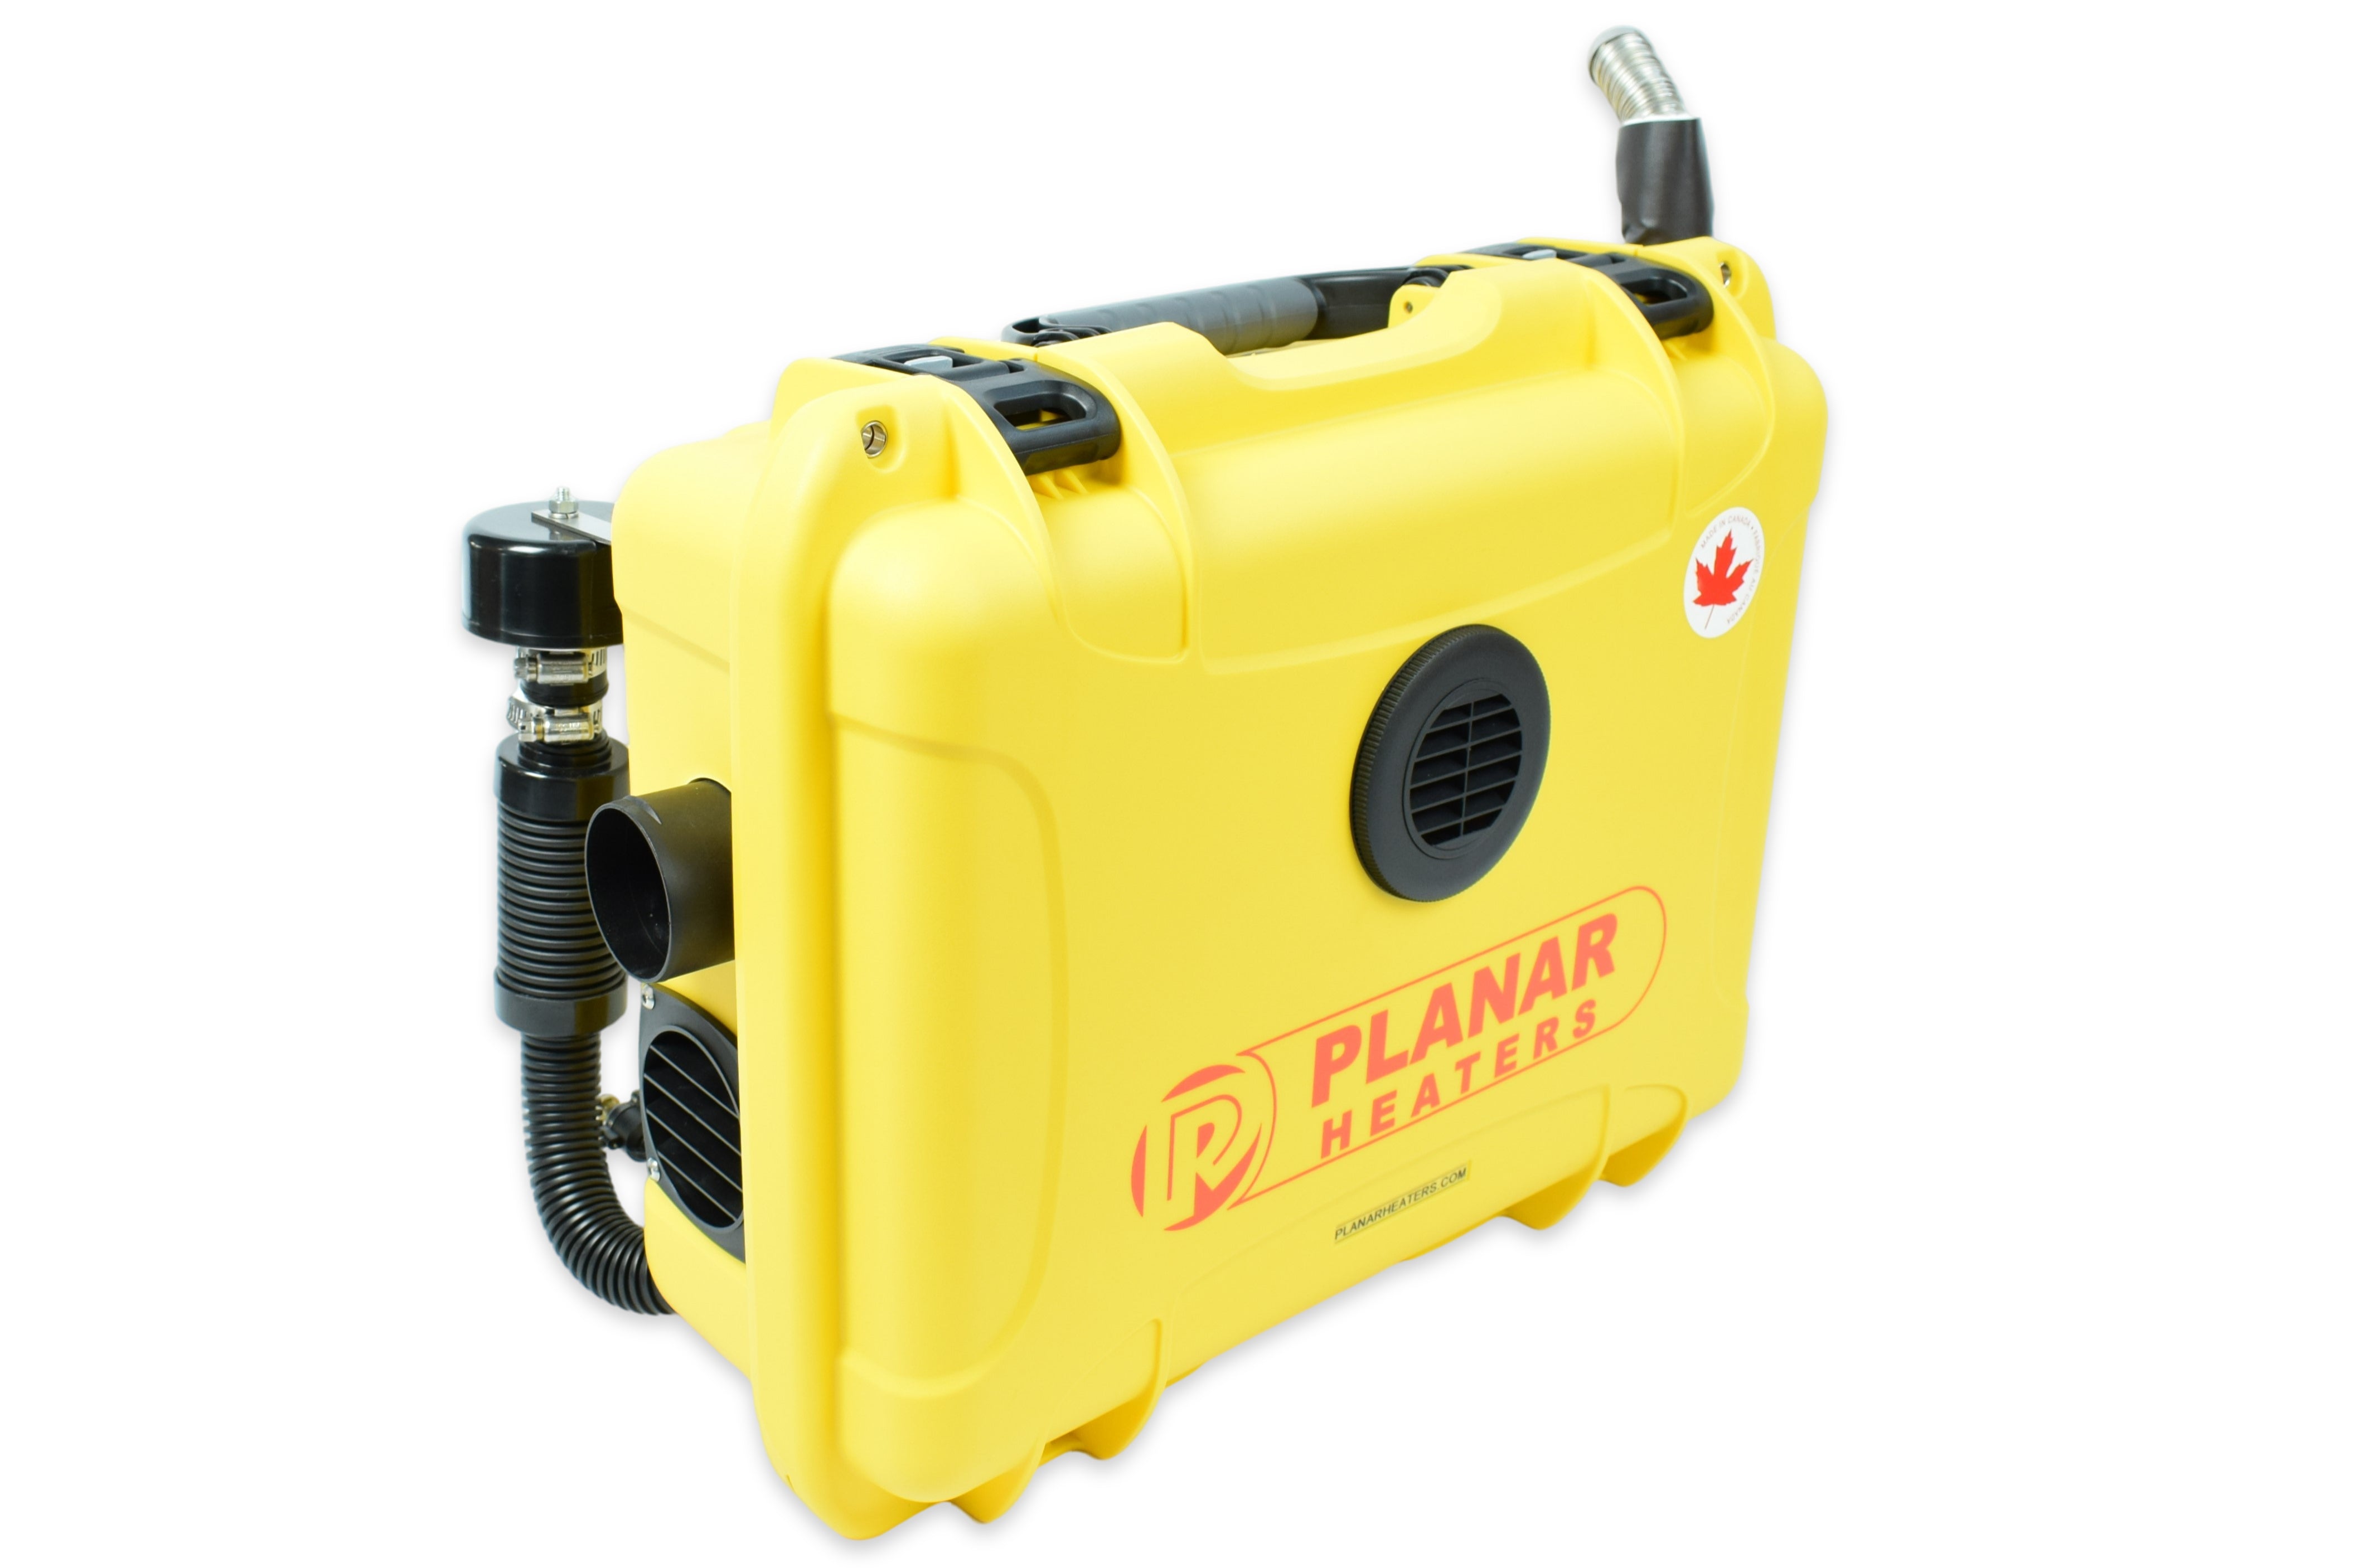 Planar Portable Diesel Air Heater 2D-12V